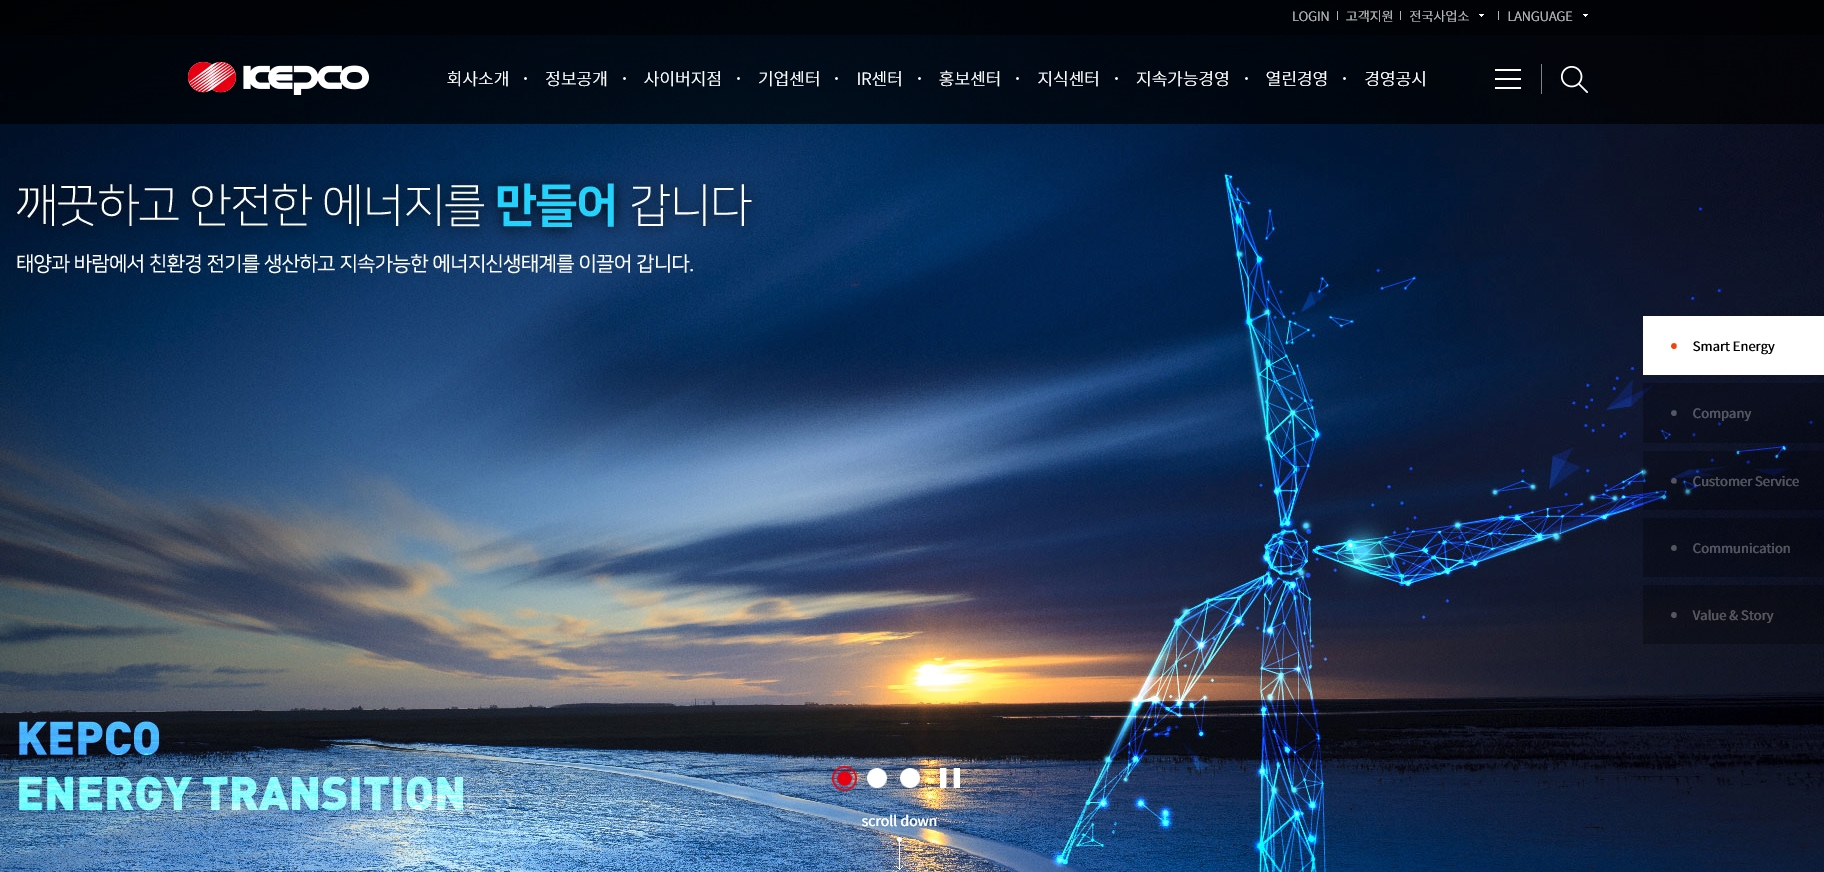 한국전력공사 대표 홈페이지 스크릿샷